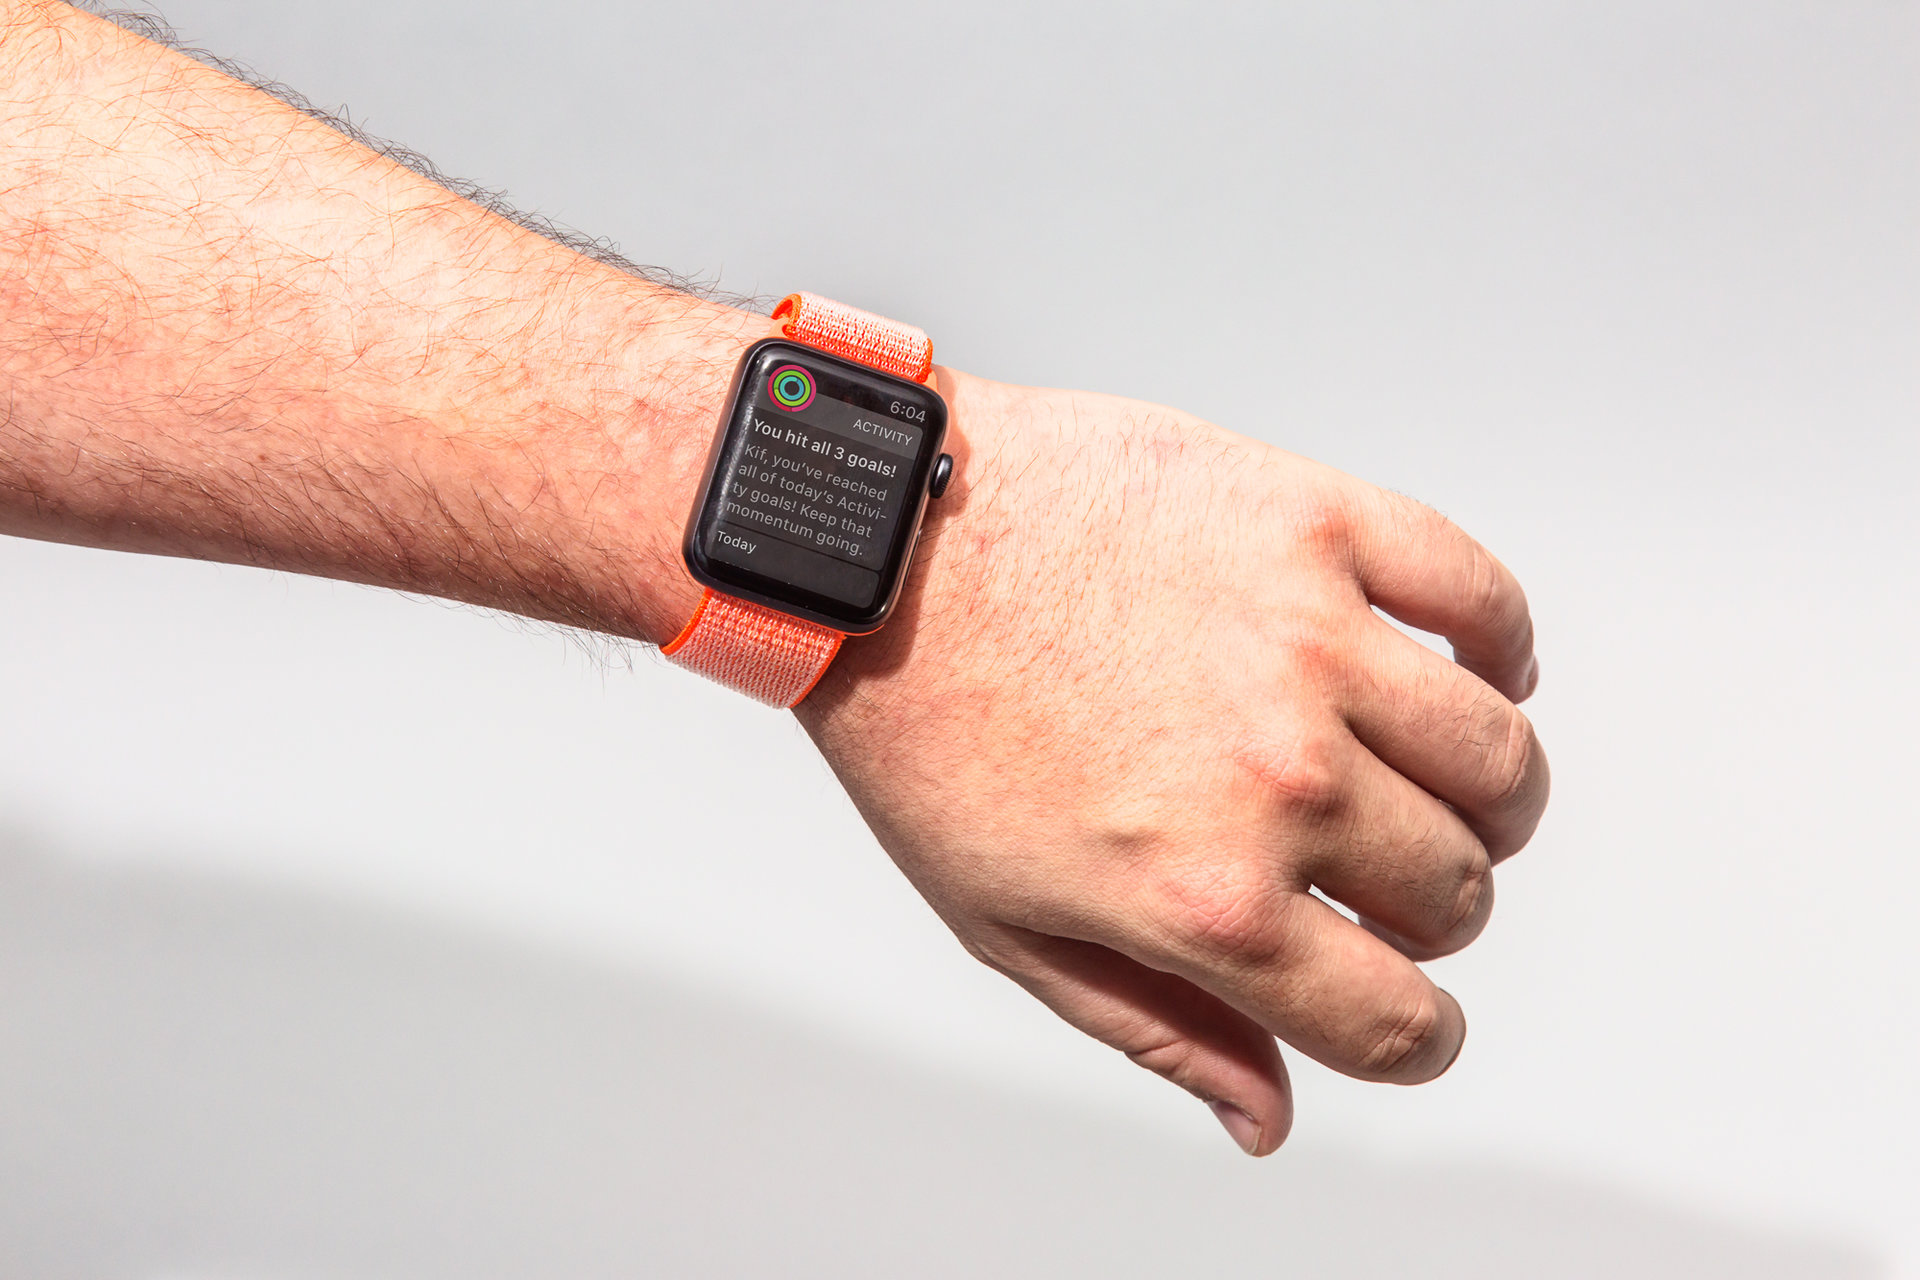 “5 ฟีเจอร์ใหม่” ที่ Apple Watch รุ่นใหม่ ควรมีในอนาคต